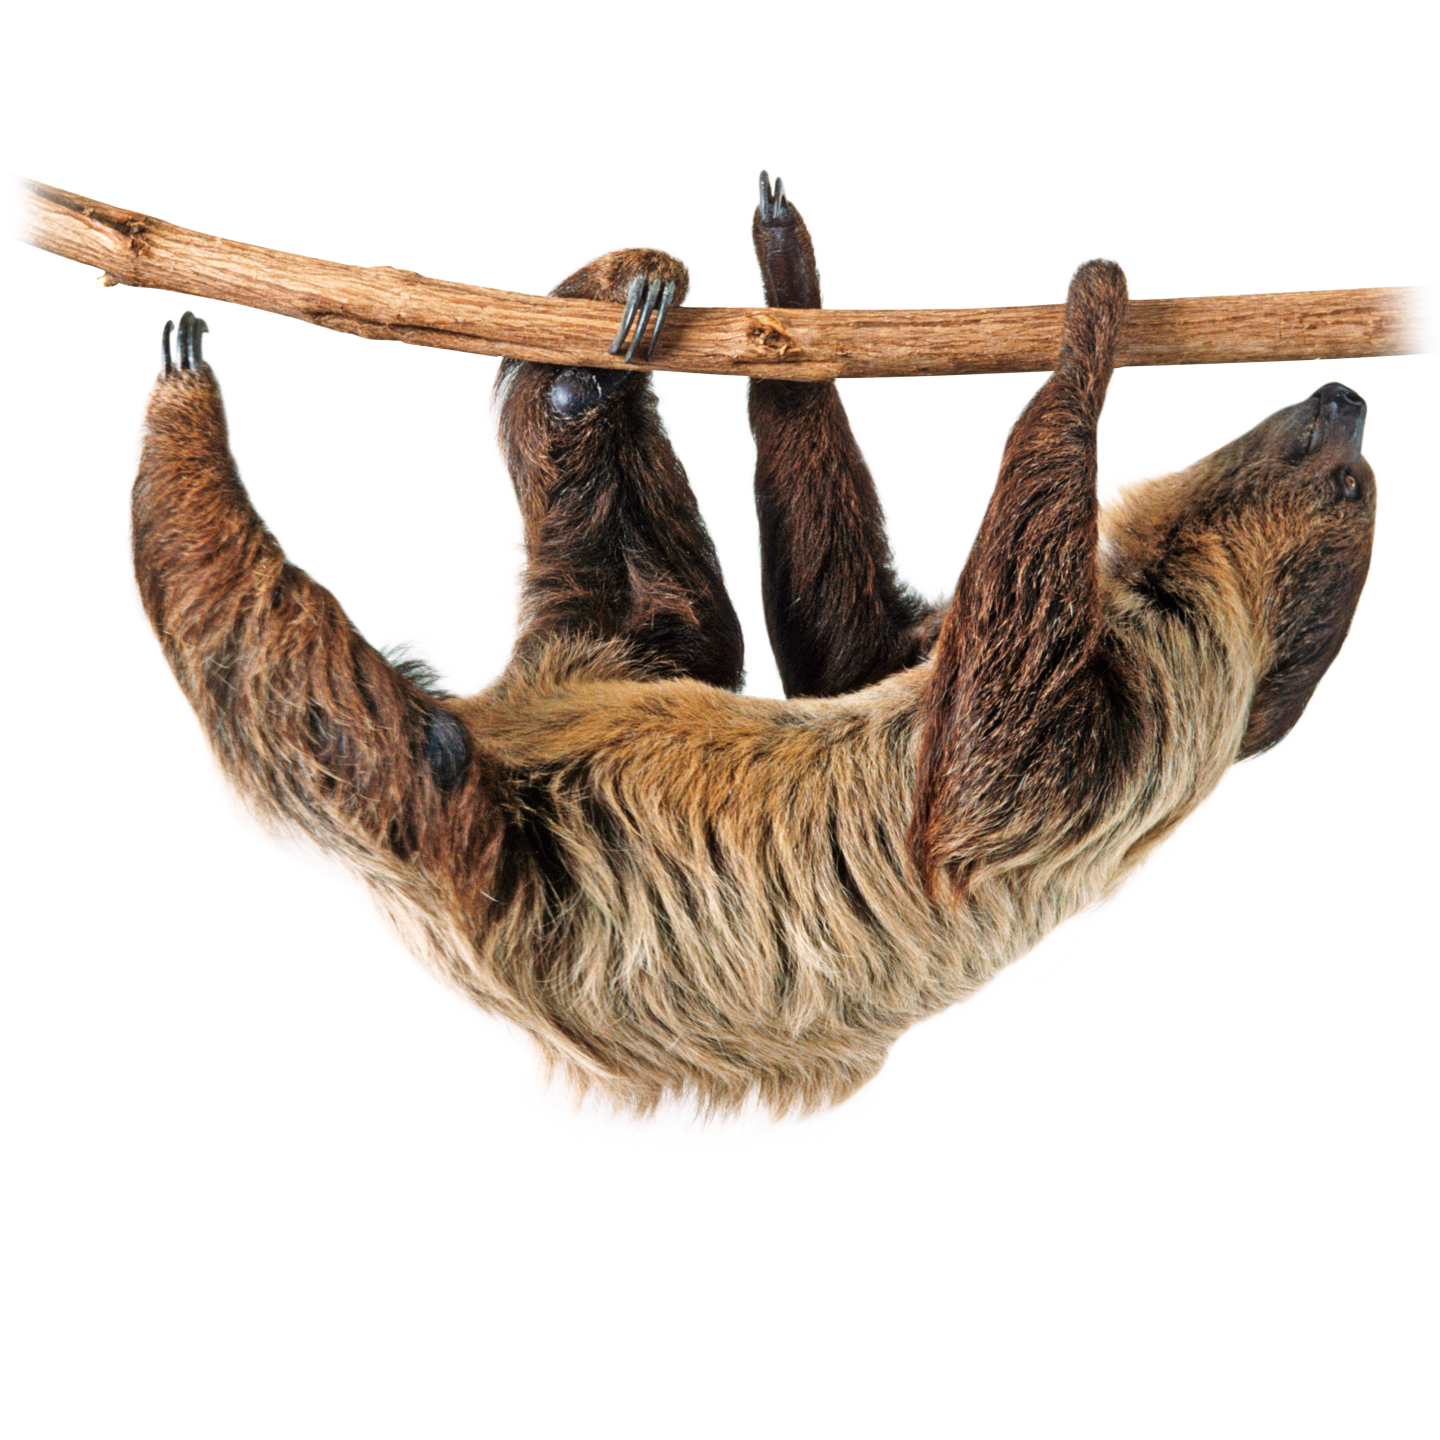 rainforest clipart rainforest sloth